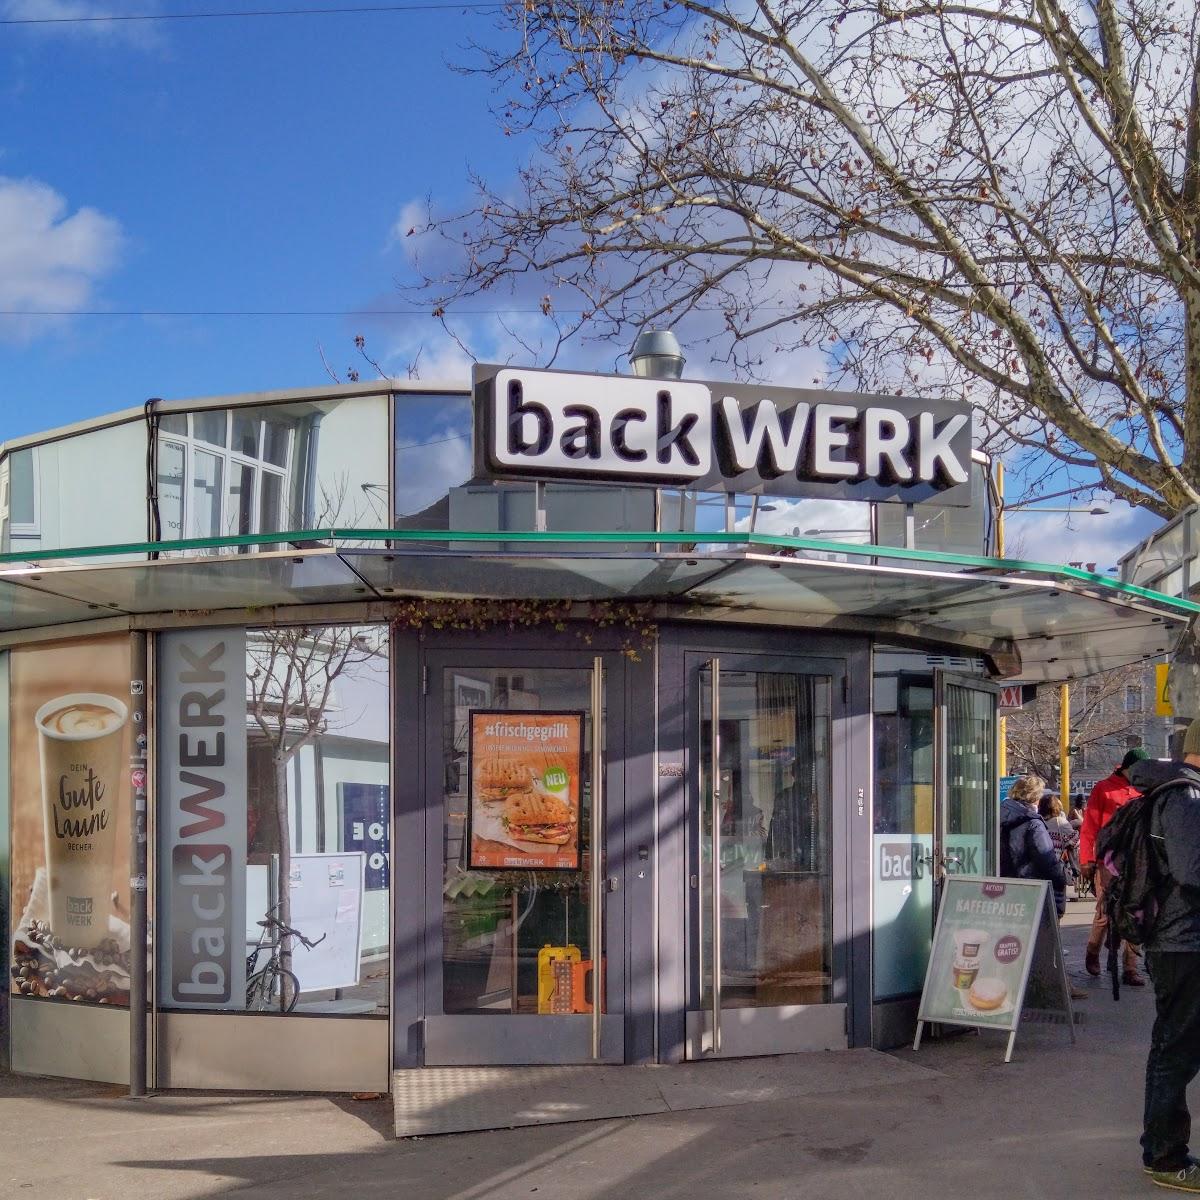 Restaurant "BackWerk" in Graz